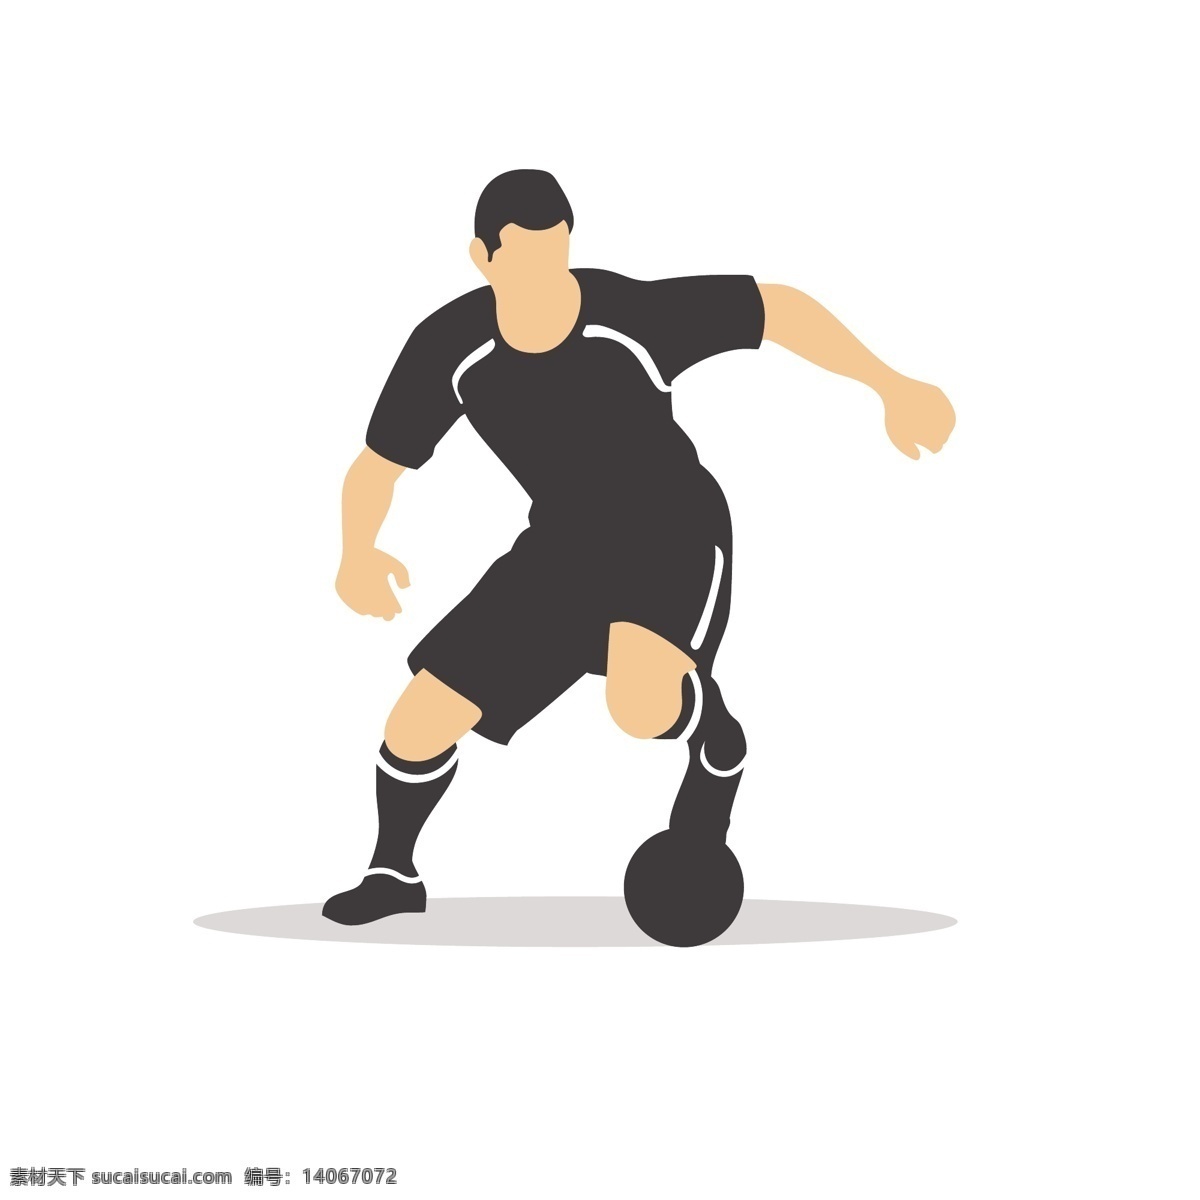 足球 假 动作 矢量 足球运动 踢足球 姿势 踢球姿势 运动姿势 体育 体育运动 踢球动作 动作姿势